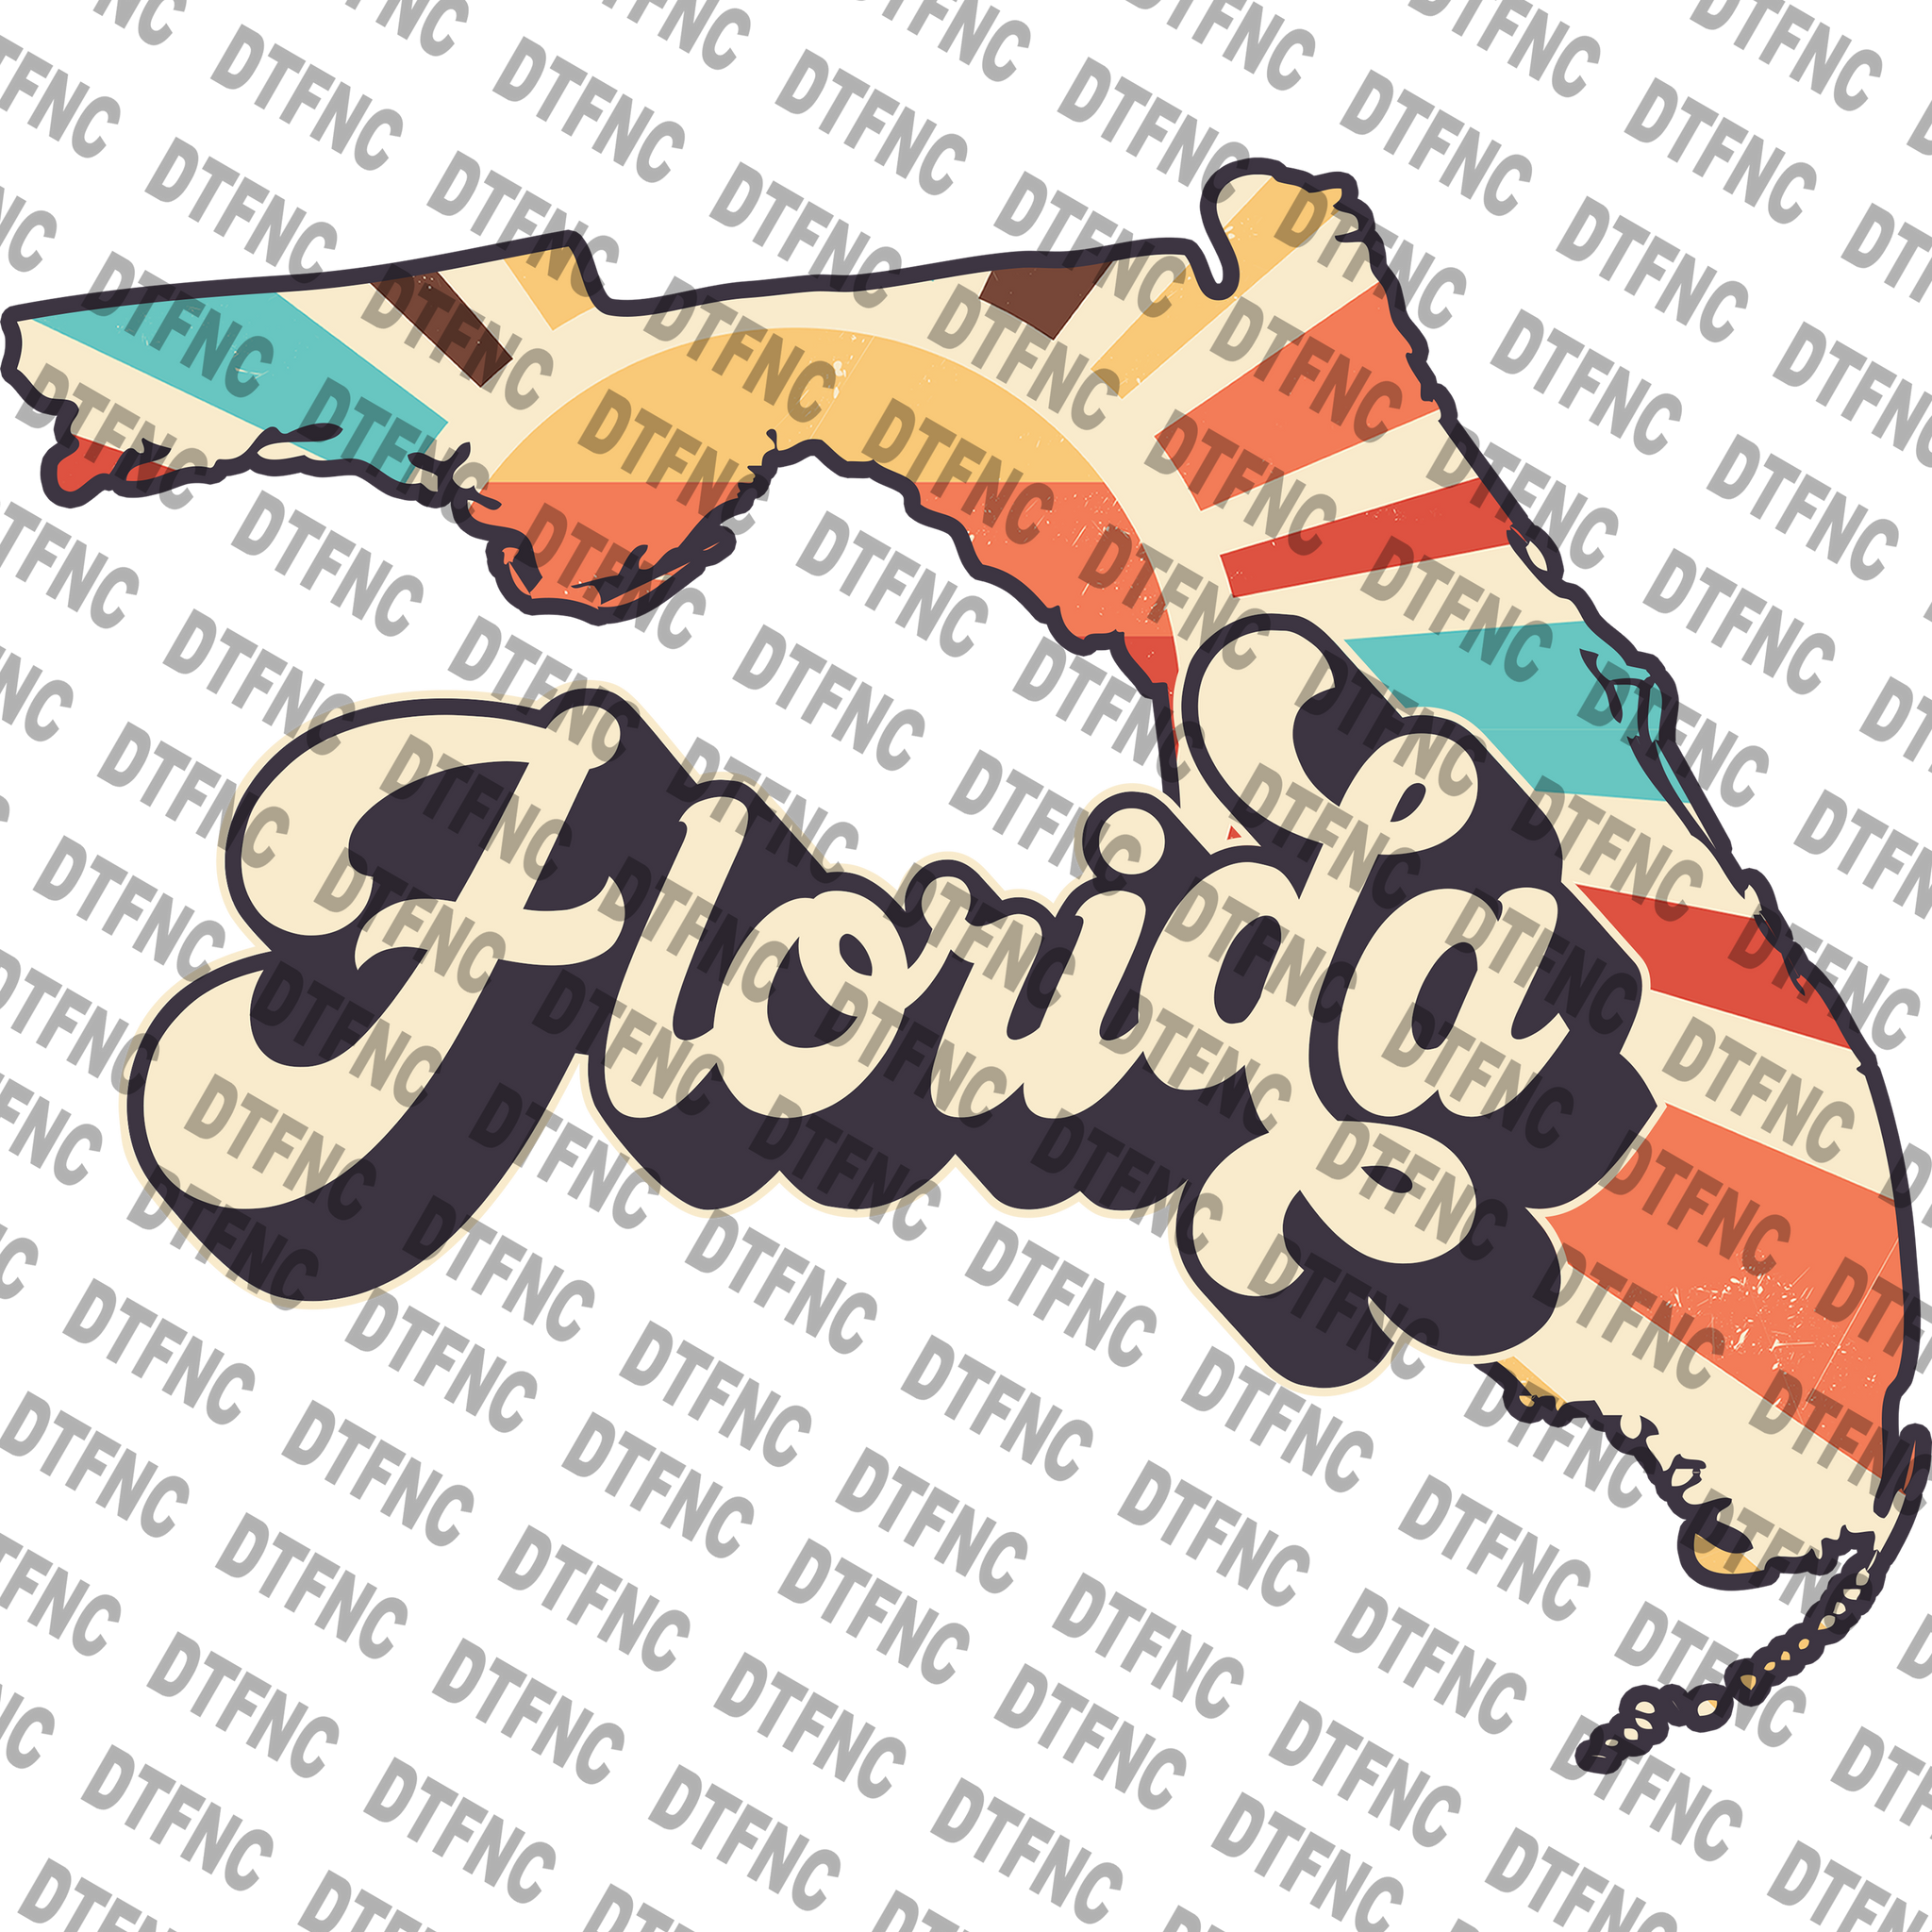 State - Florida